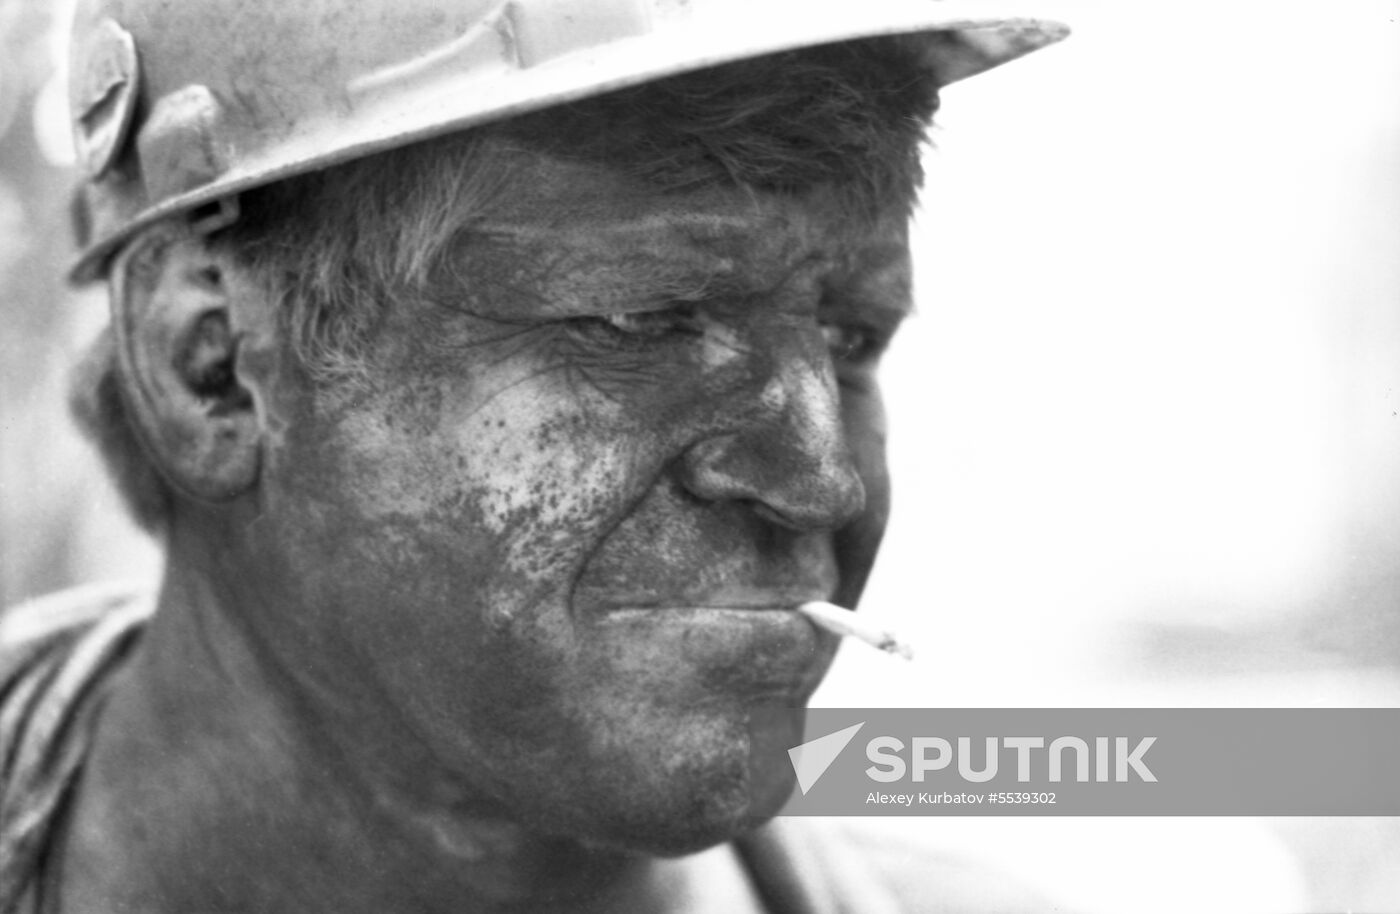 Donetsk miner